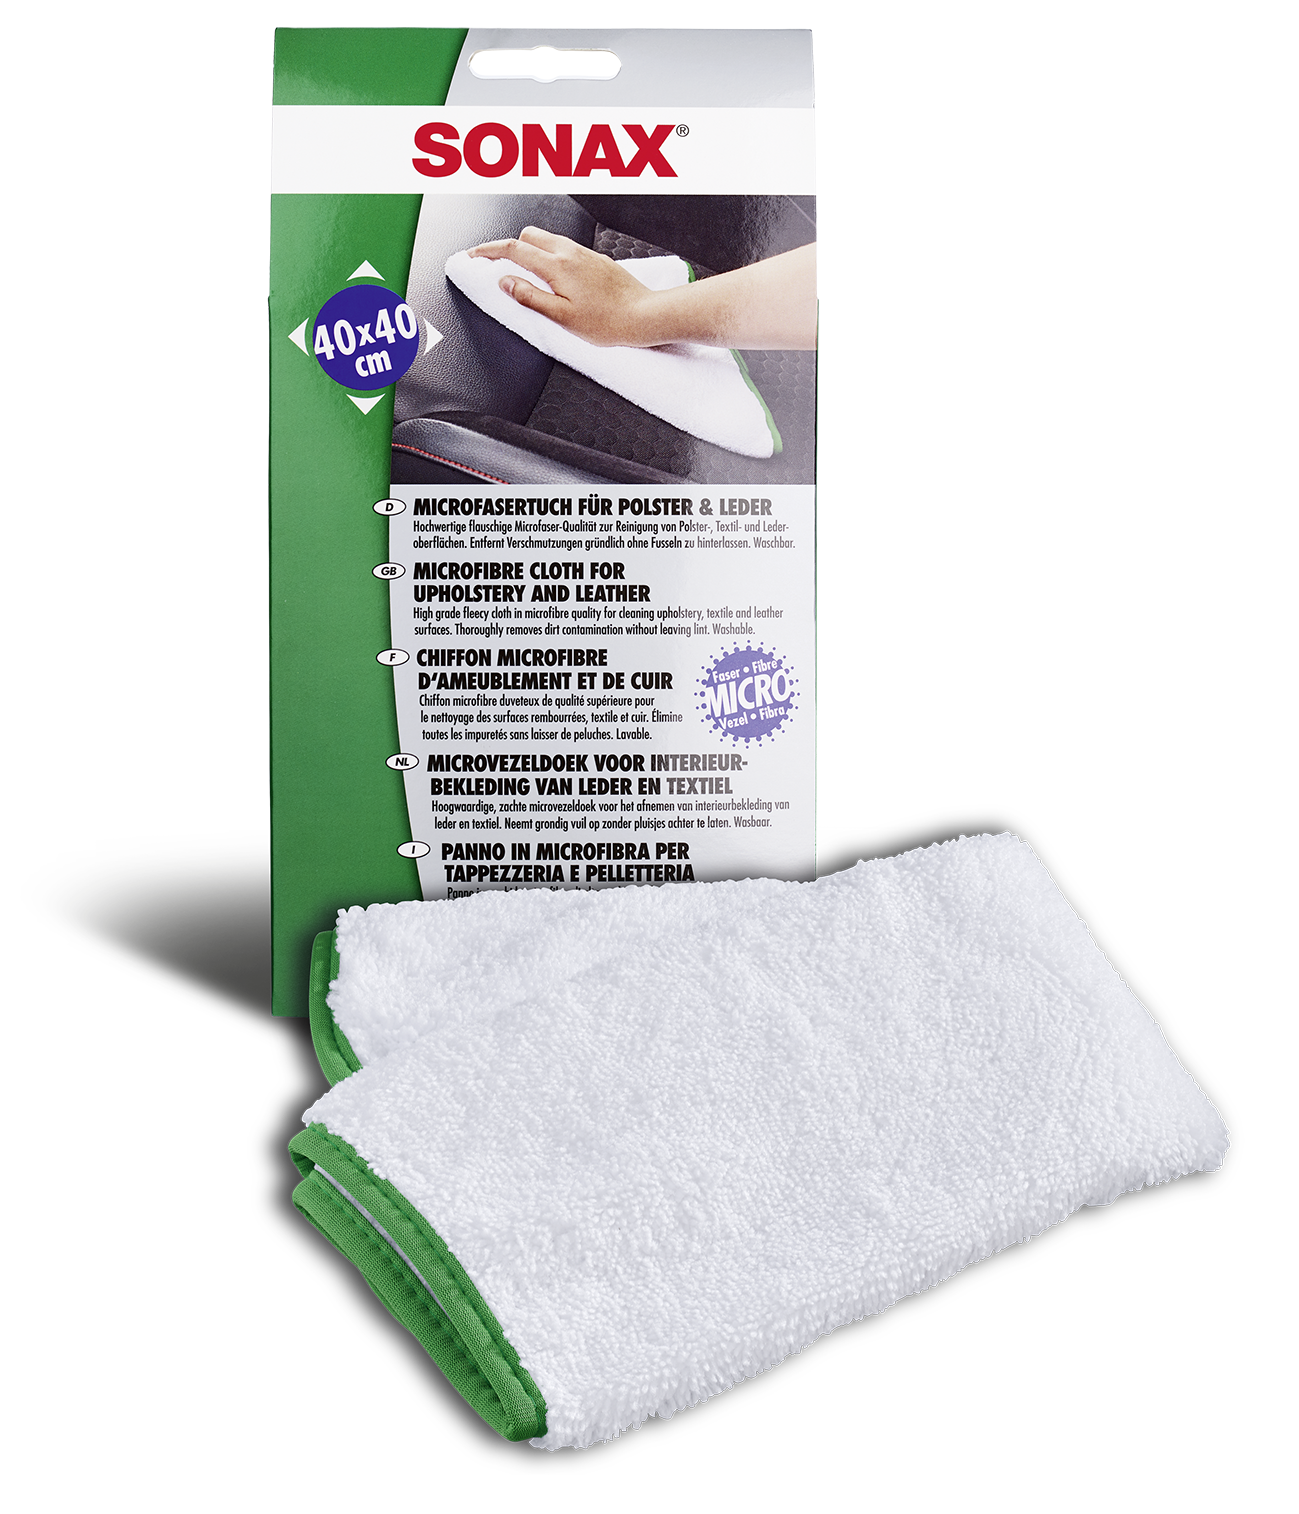 SONAX MicrofaserTuch für Polster+Leder 1 Stk. - Weigola Hygienevertrieb -  - Weigola Hygienevertrieb